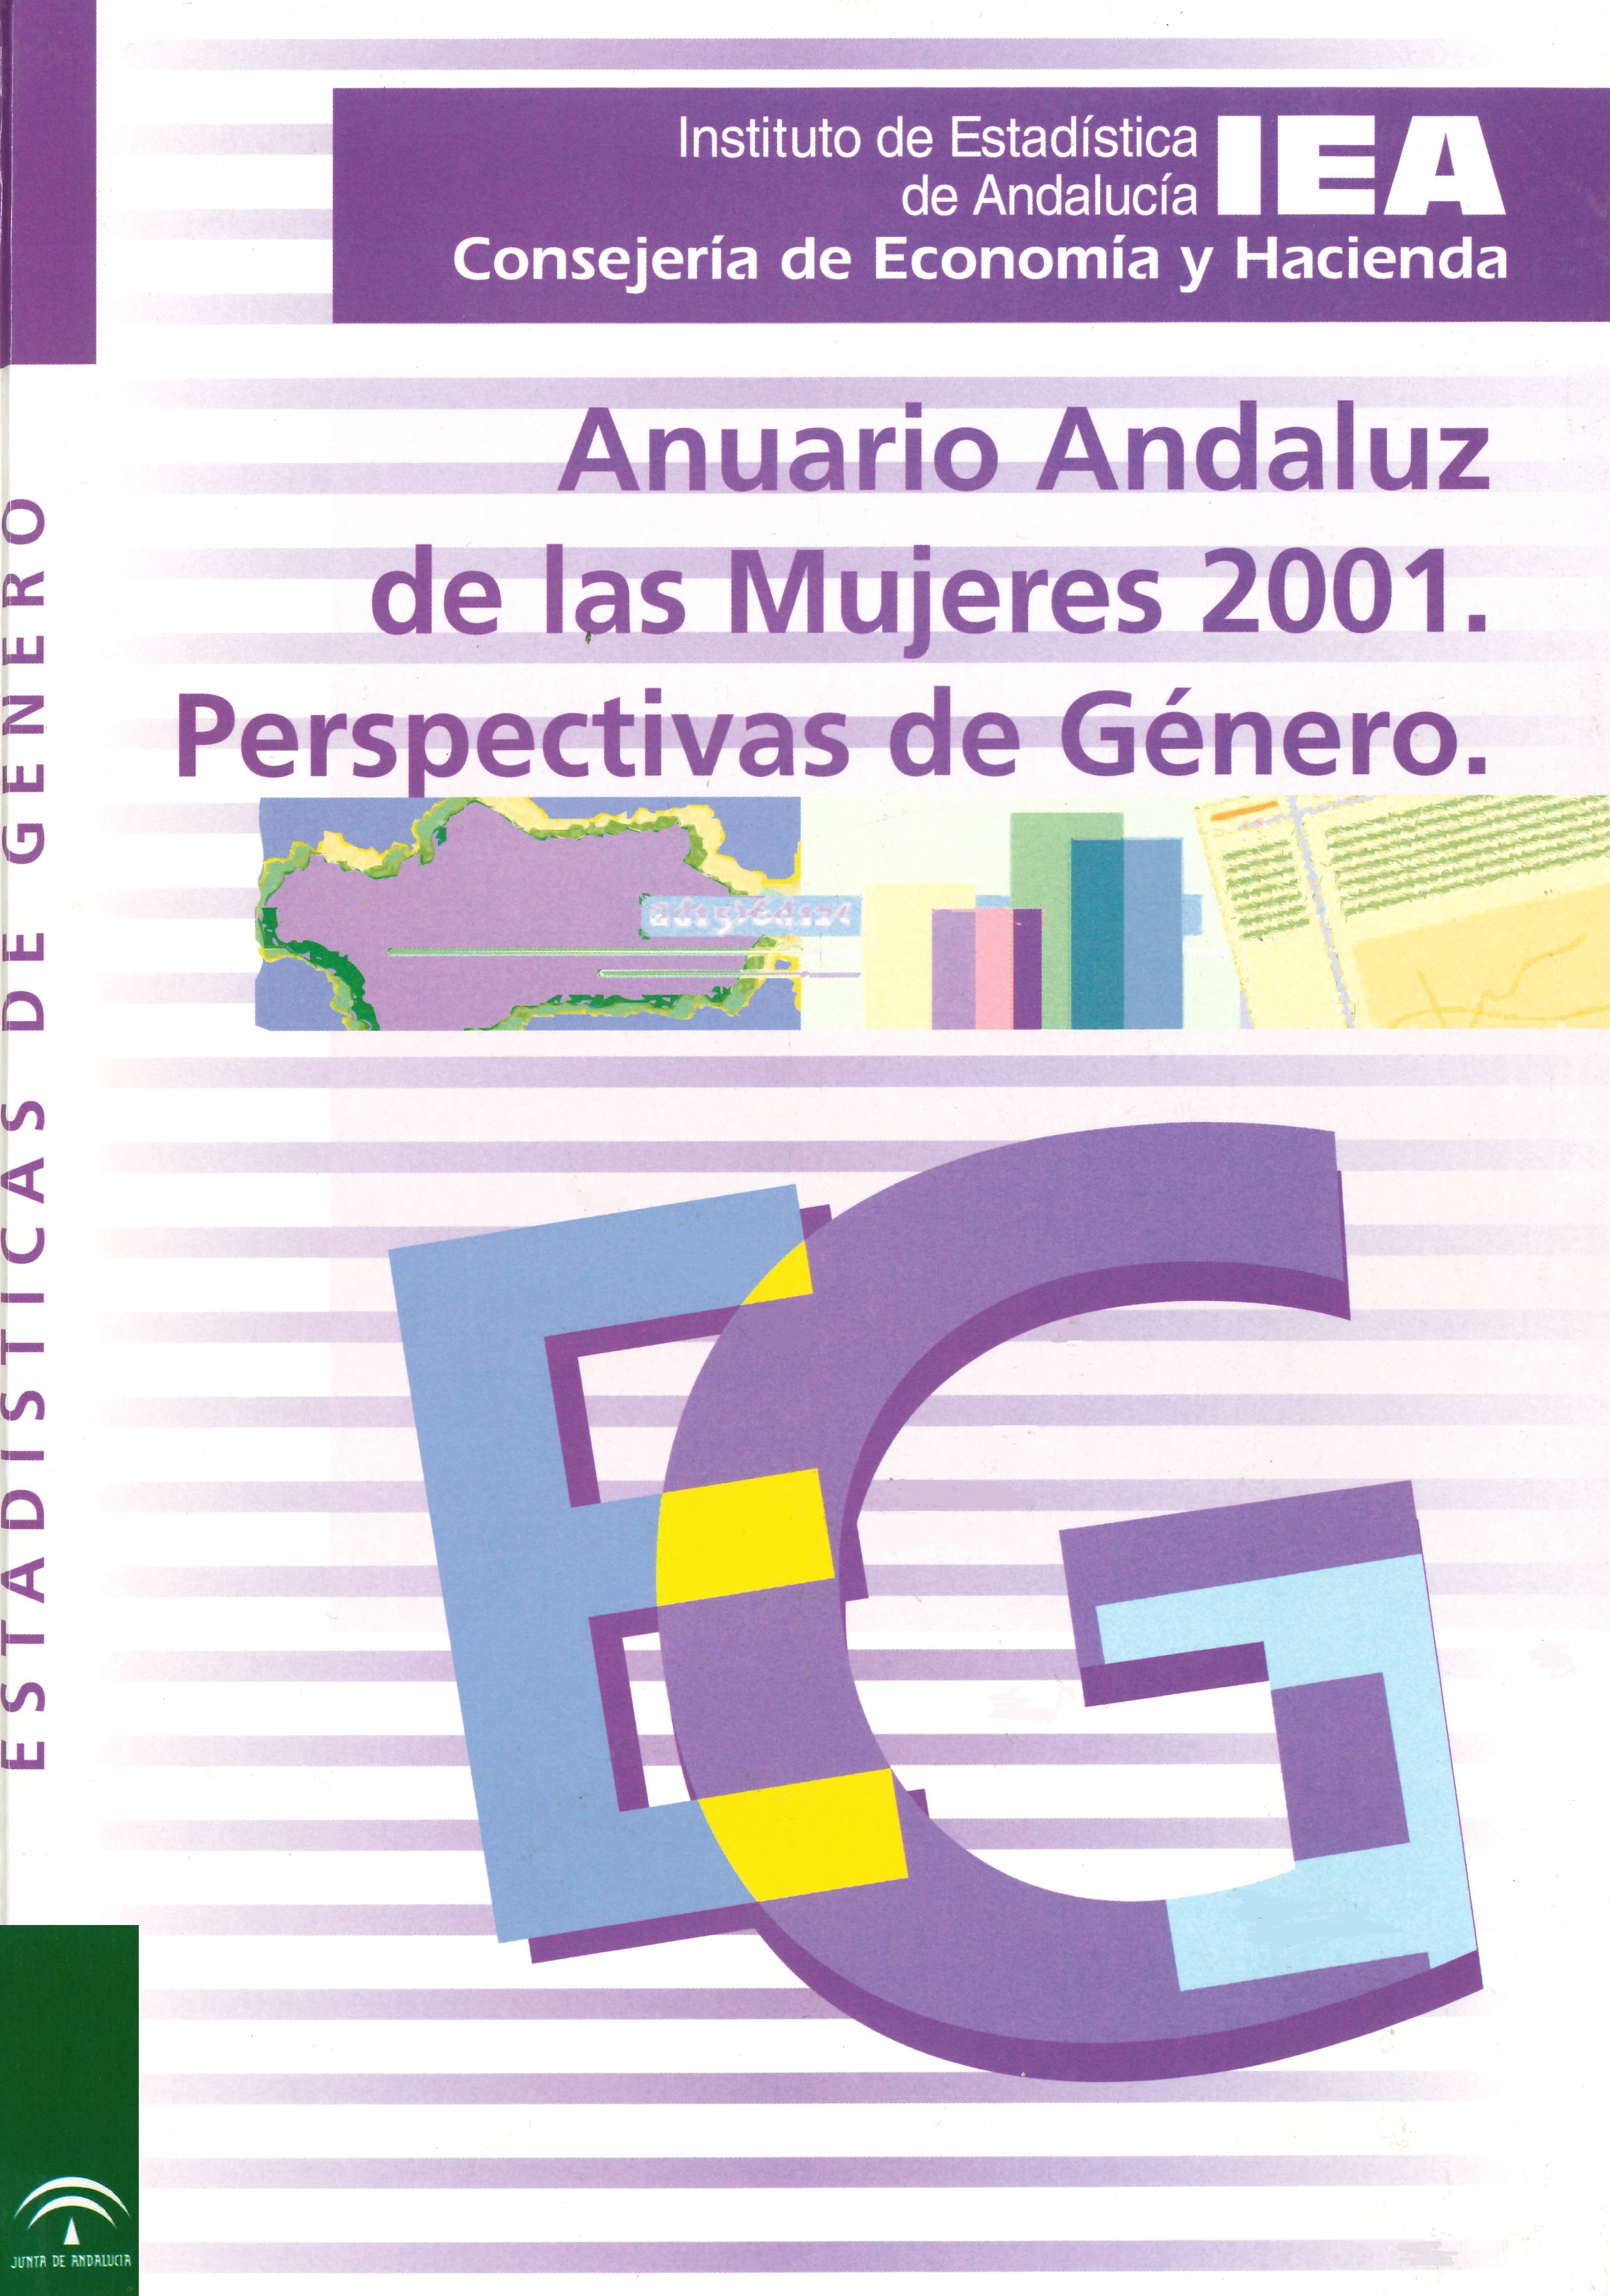 Imagen representativa de la publicación Anuario andaluz de las mujeres: perspectivas de género 2001